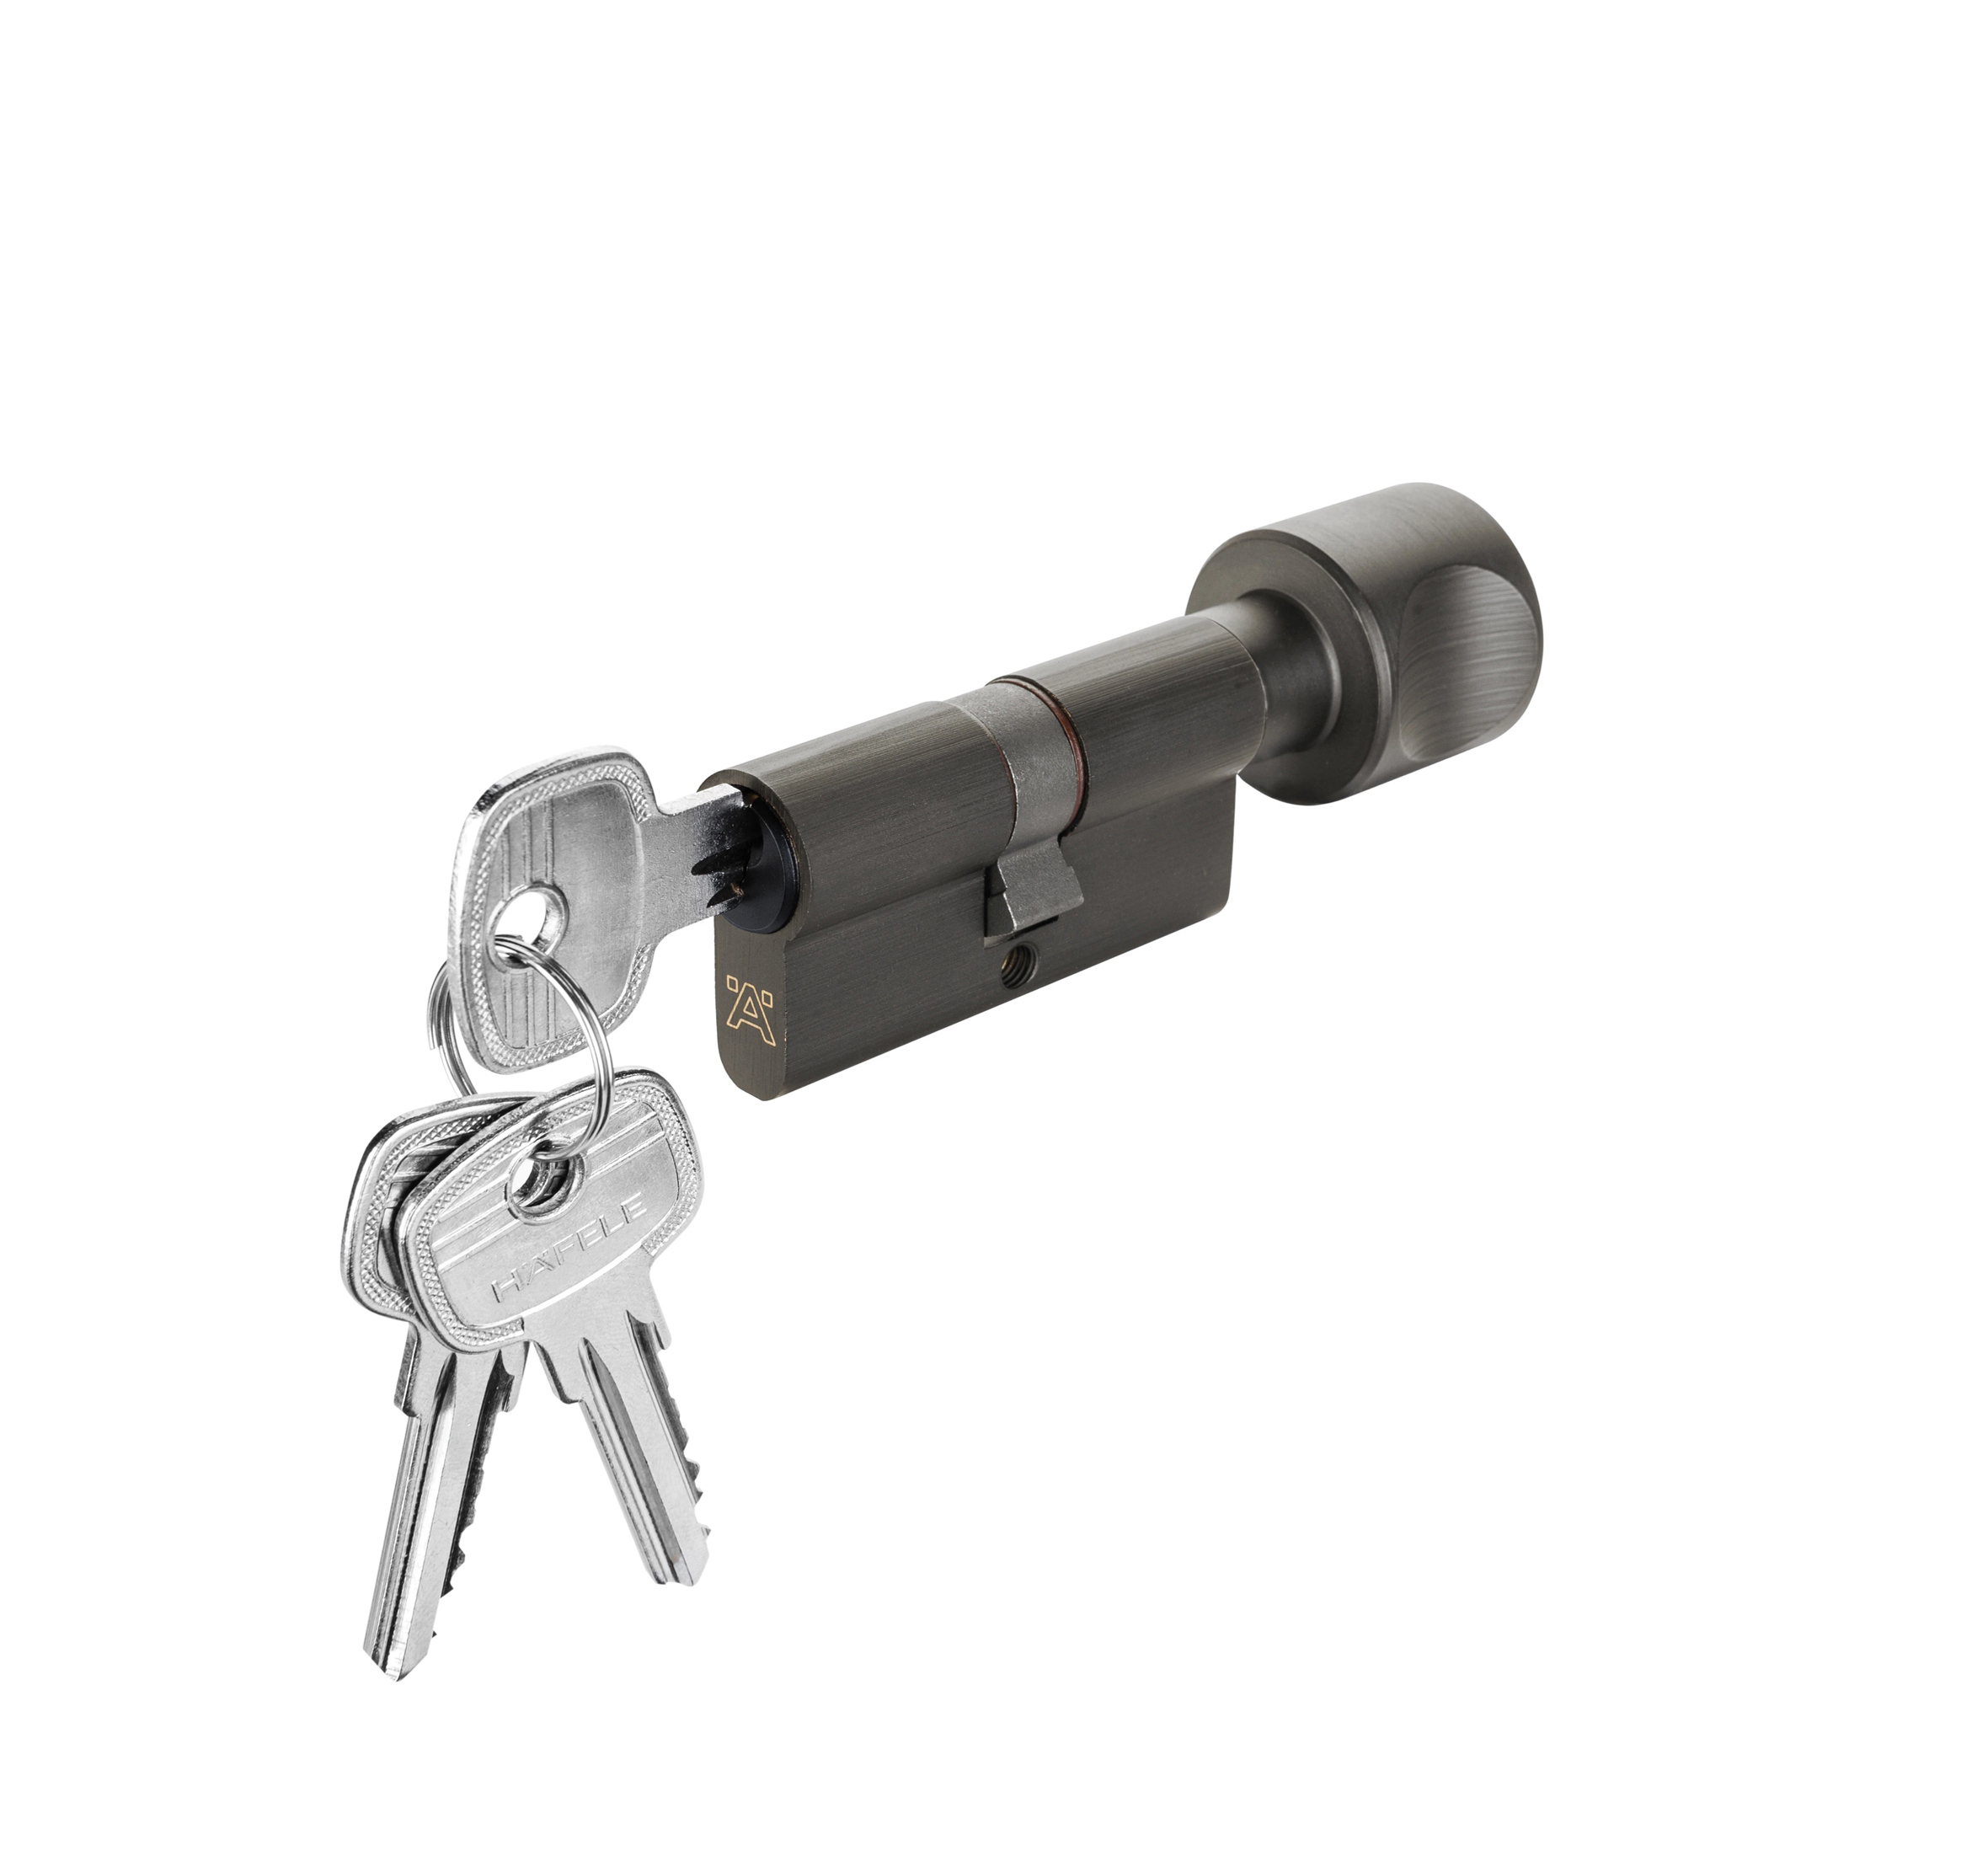 Ruột khóa Hafele 1 đầu chìa, 1 đầu vặn, 81mm, màu đen - 916.64.928